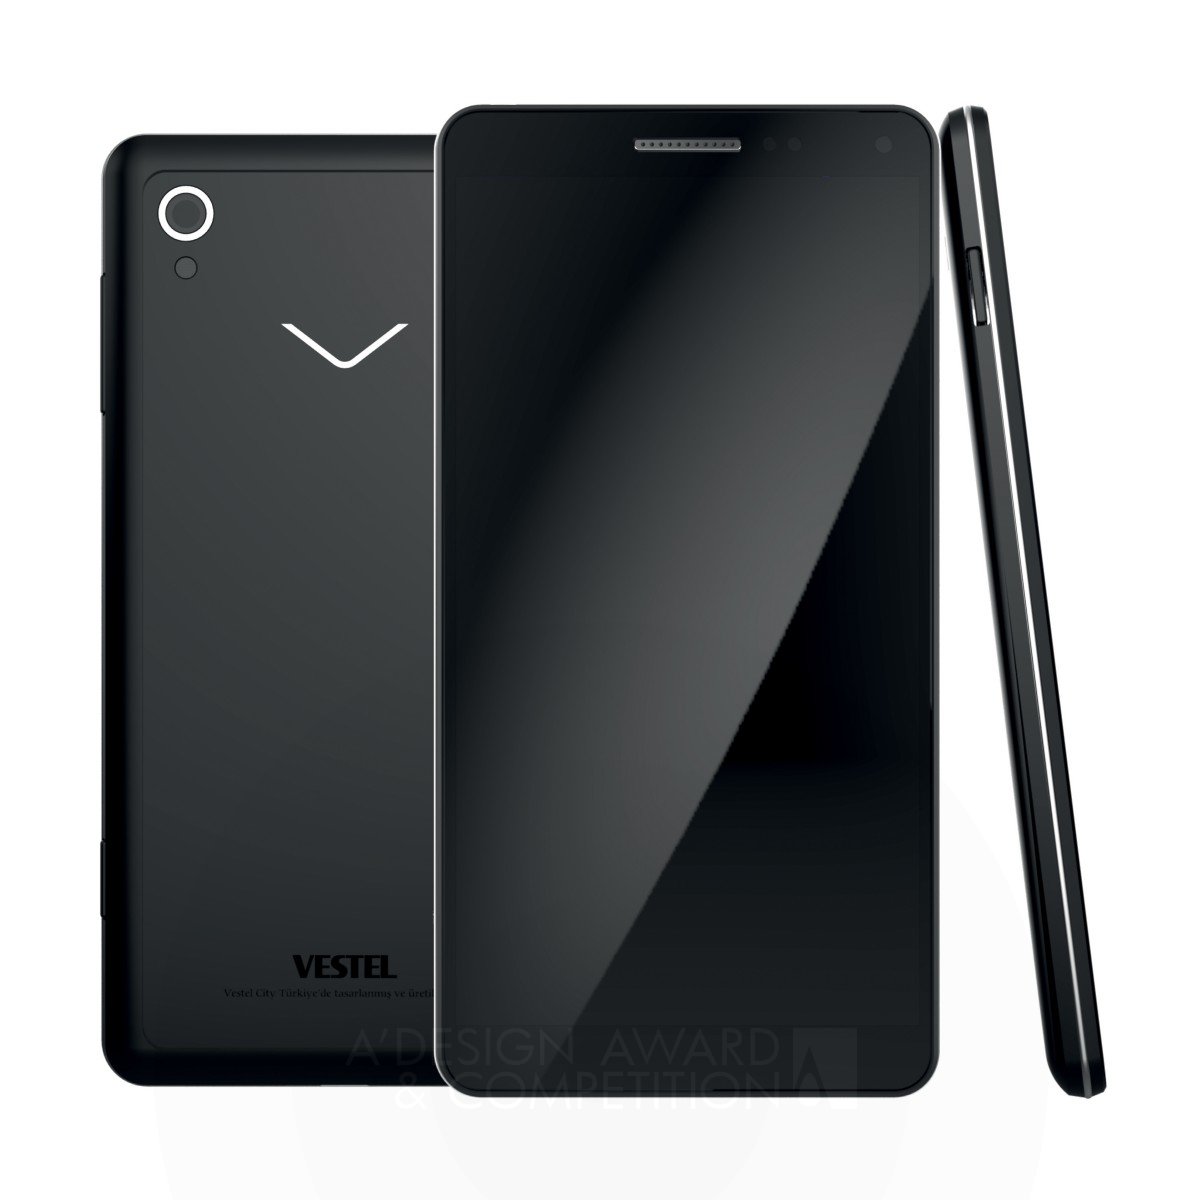 Vestel ID Team smart phone